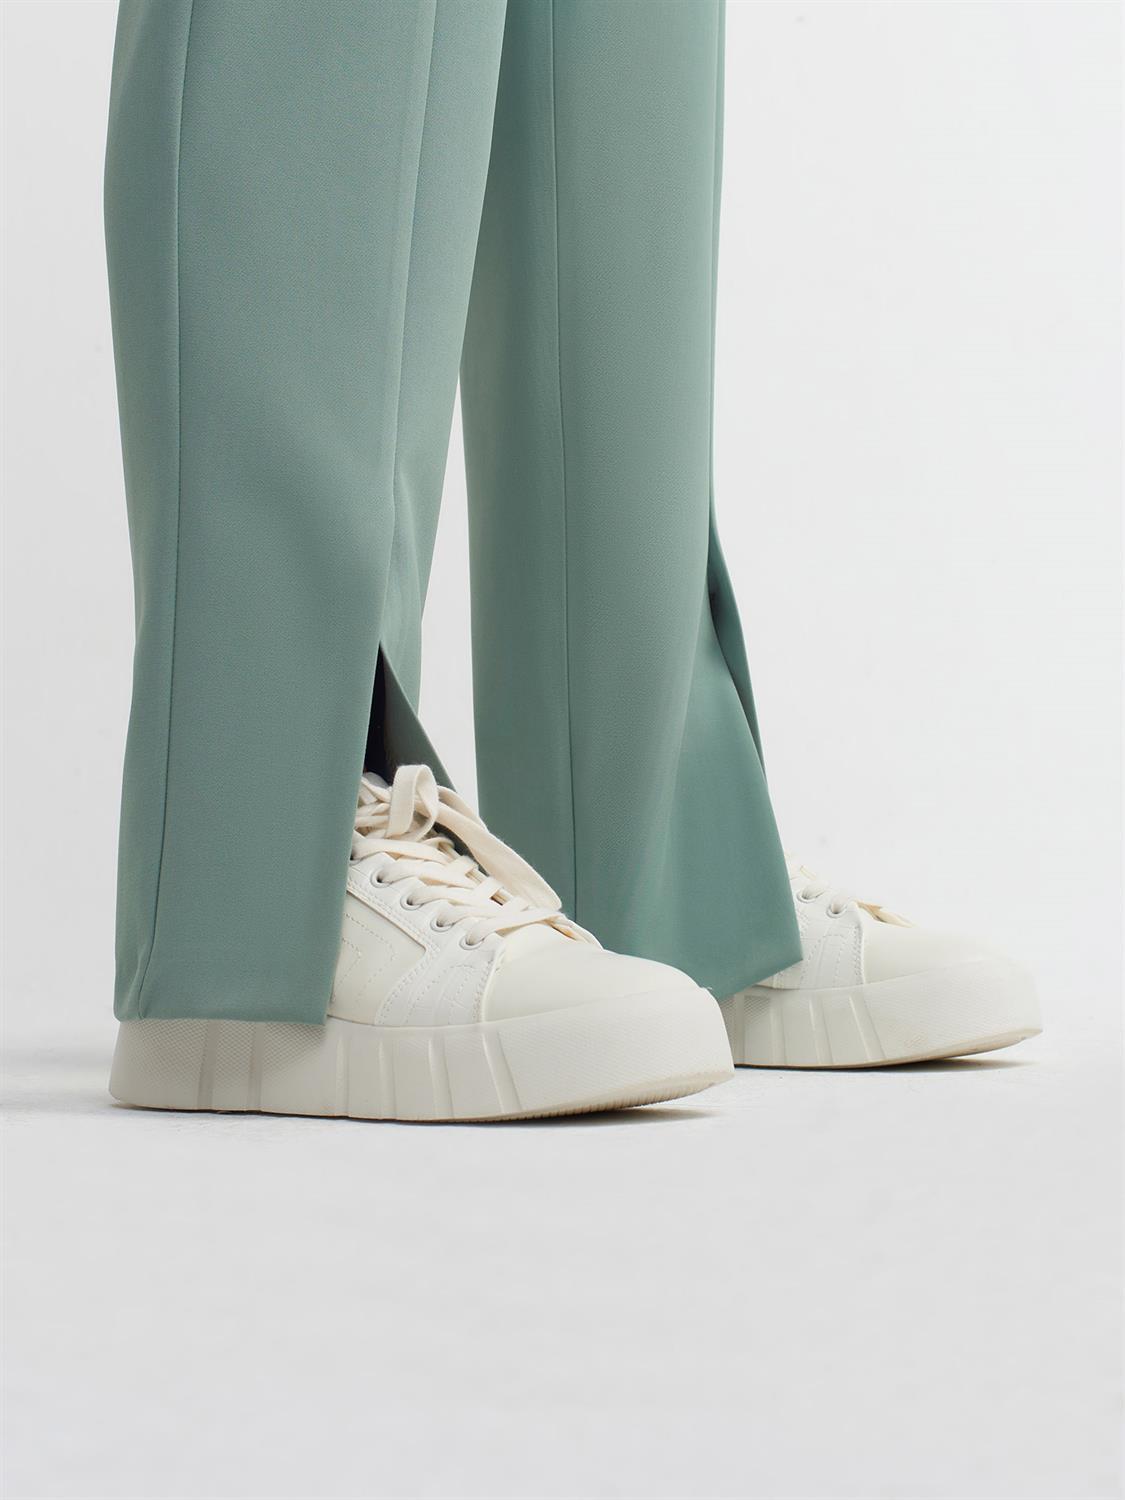 4956 Yırtmaçlı Paça Smart Pantolon-Yeşil